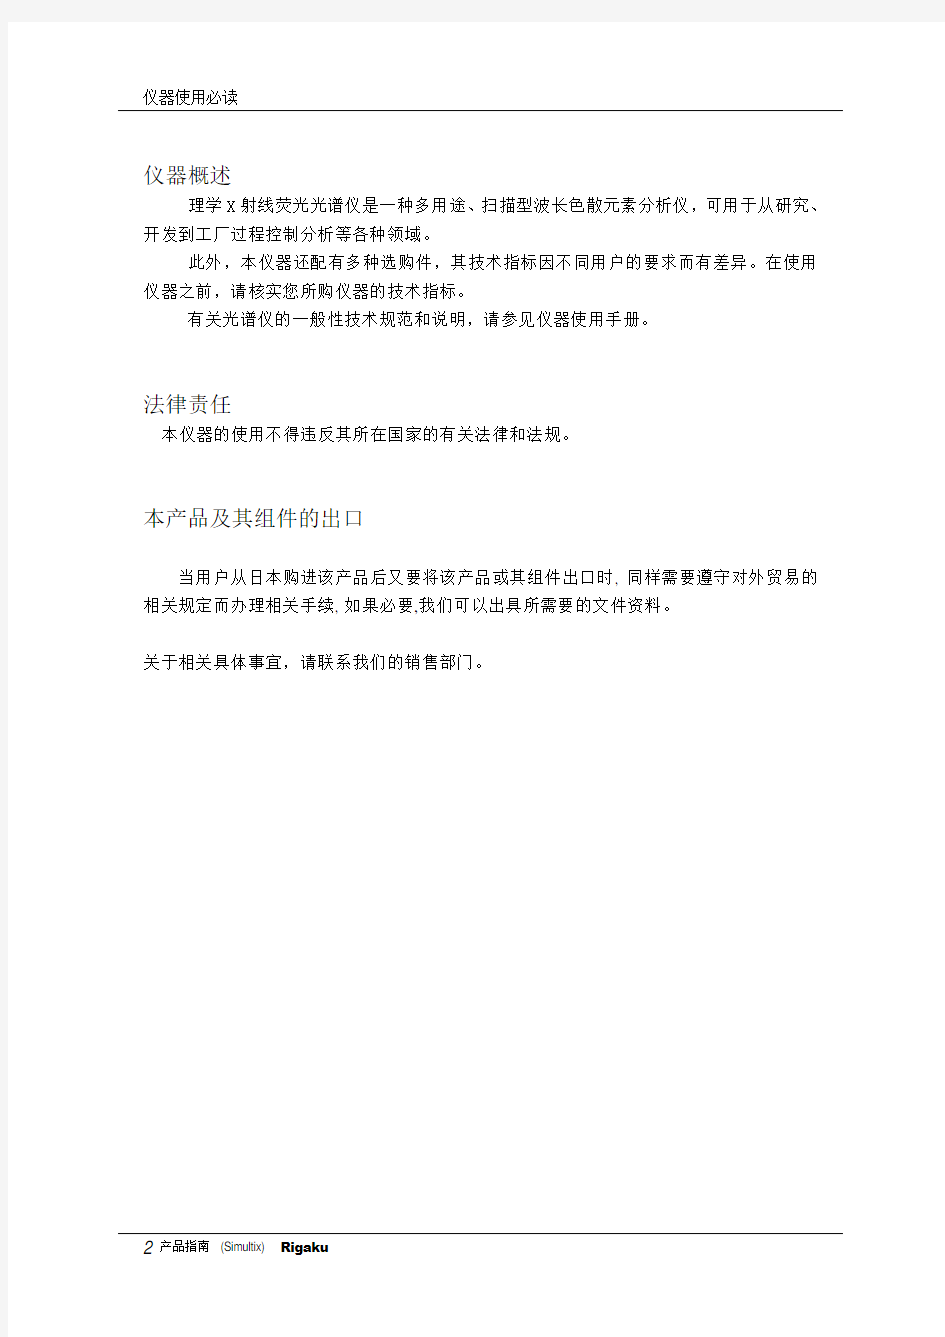 波长色散型荧光仪中文说明书用户必读手册